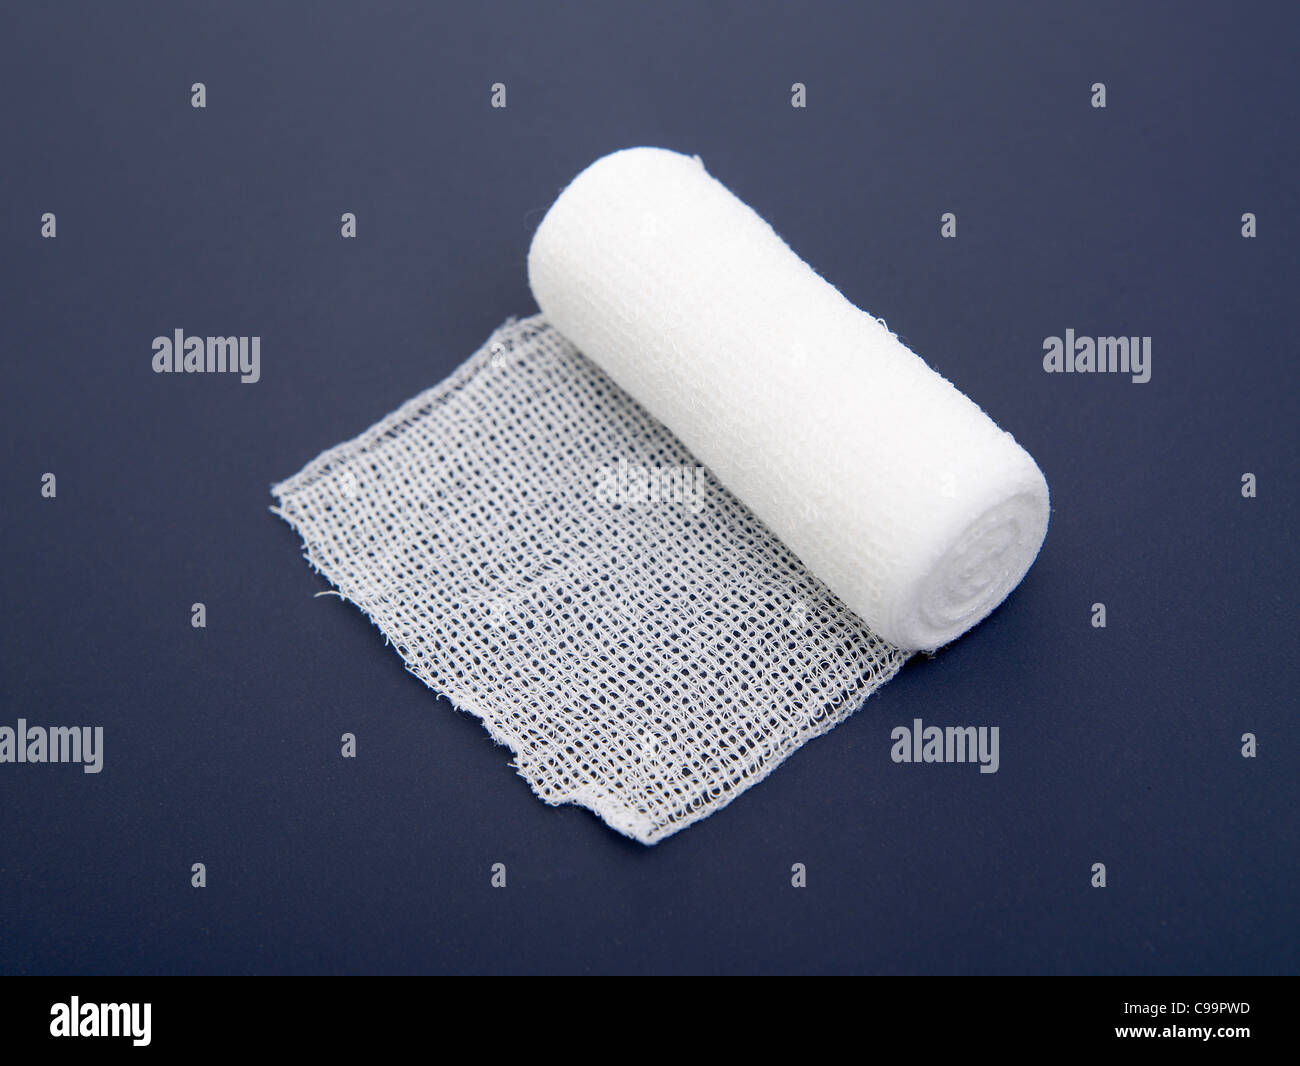 Gauze bandage on blue background Stock Photo